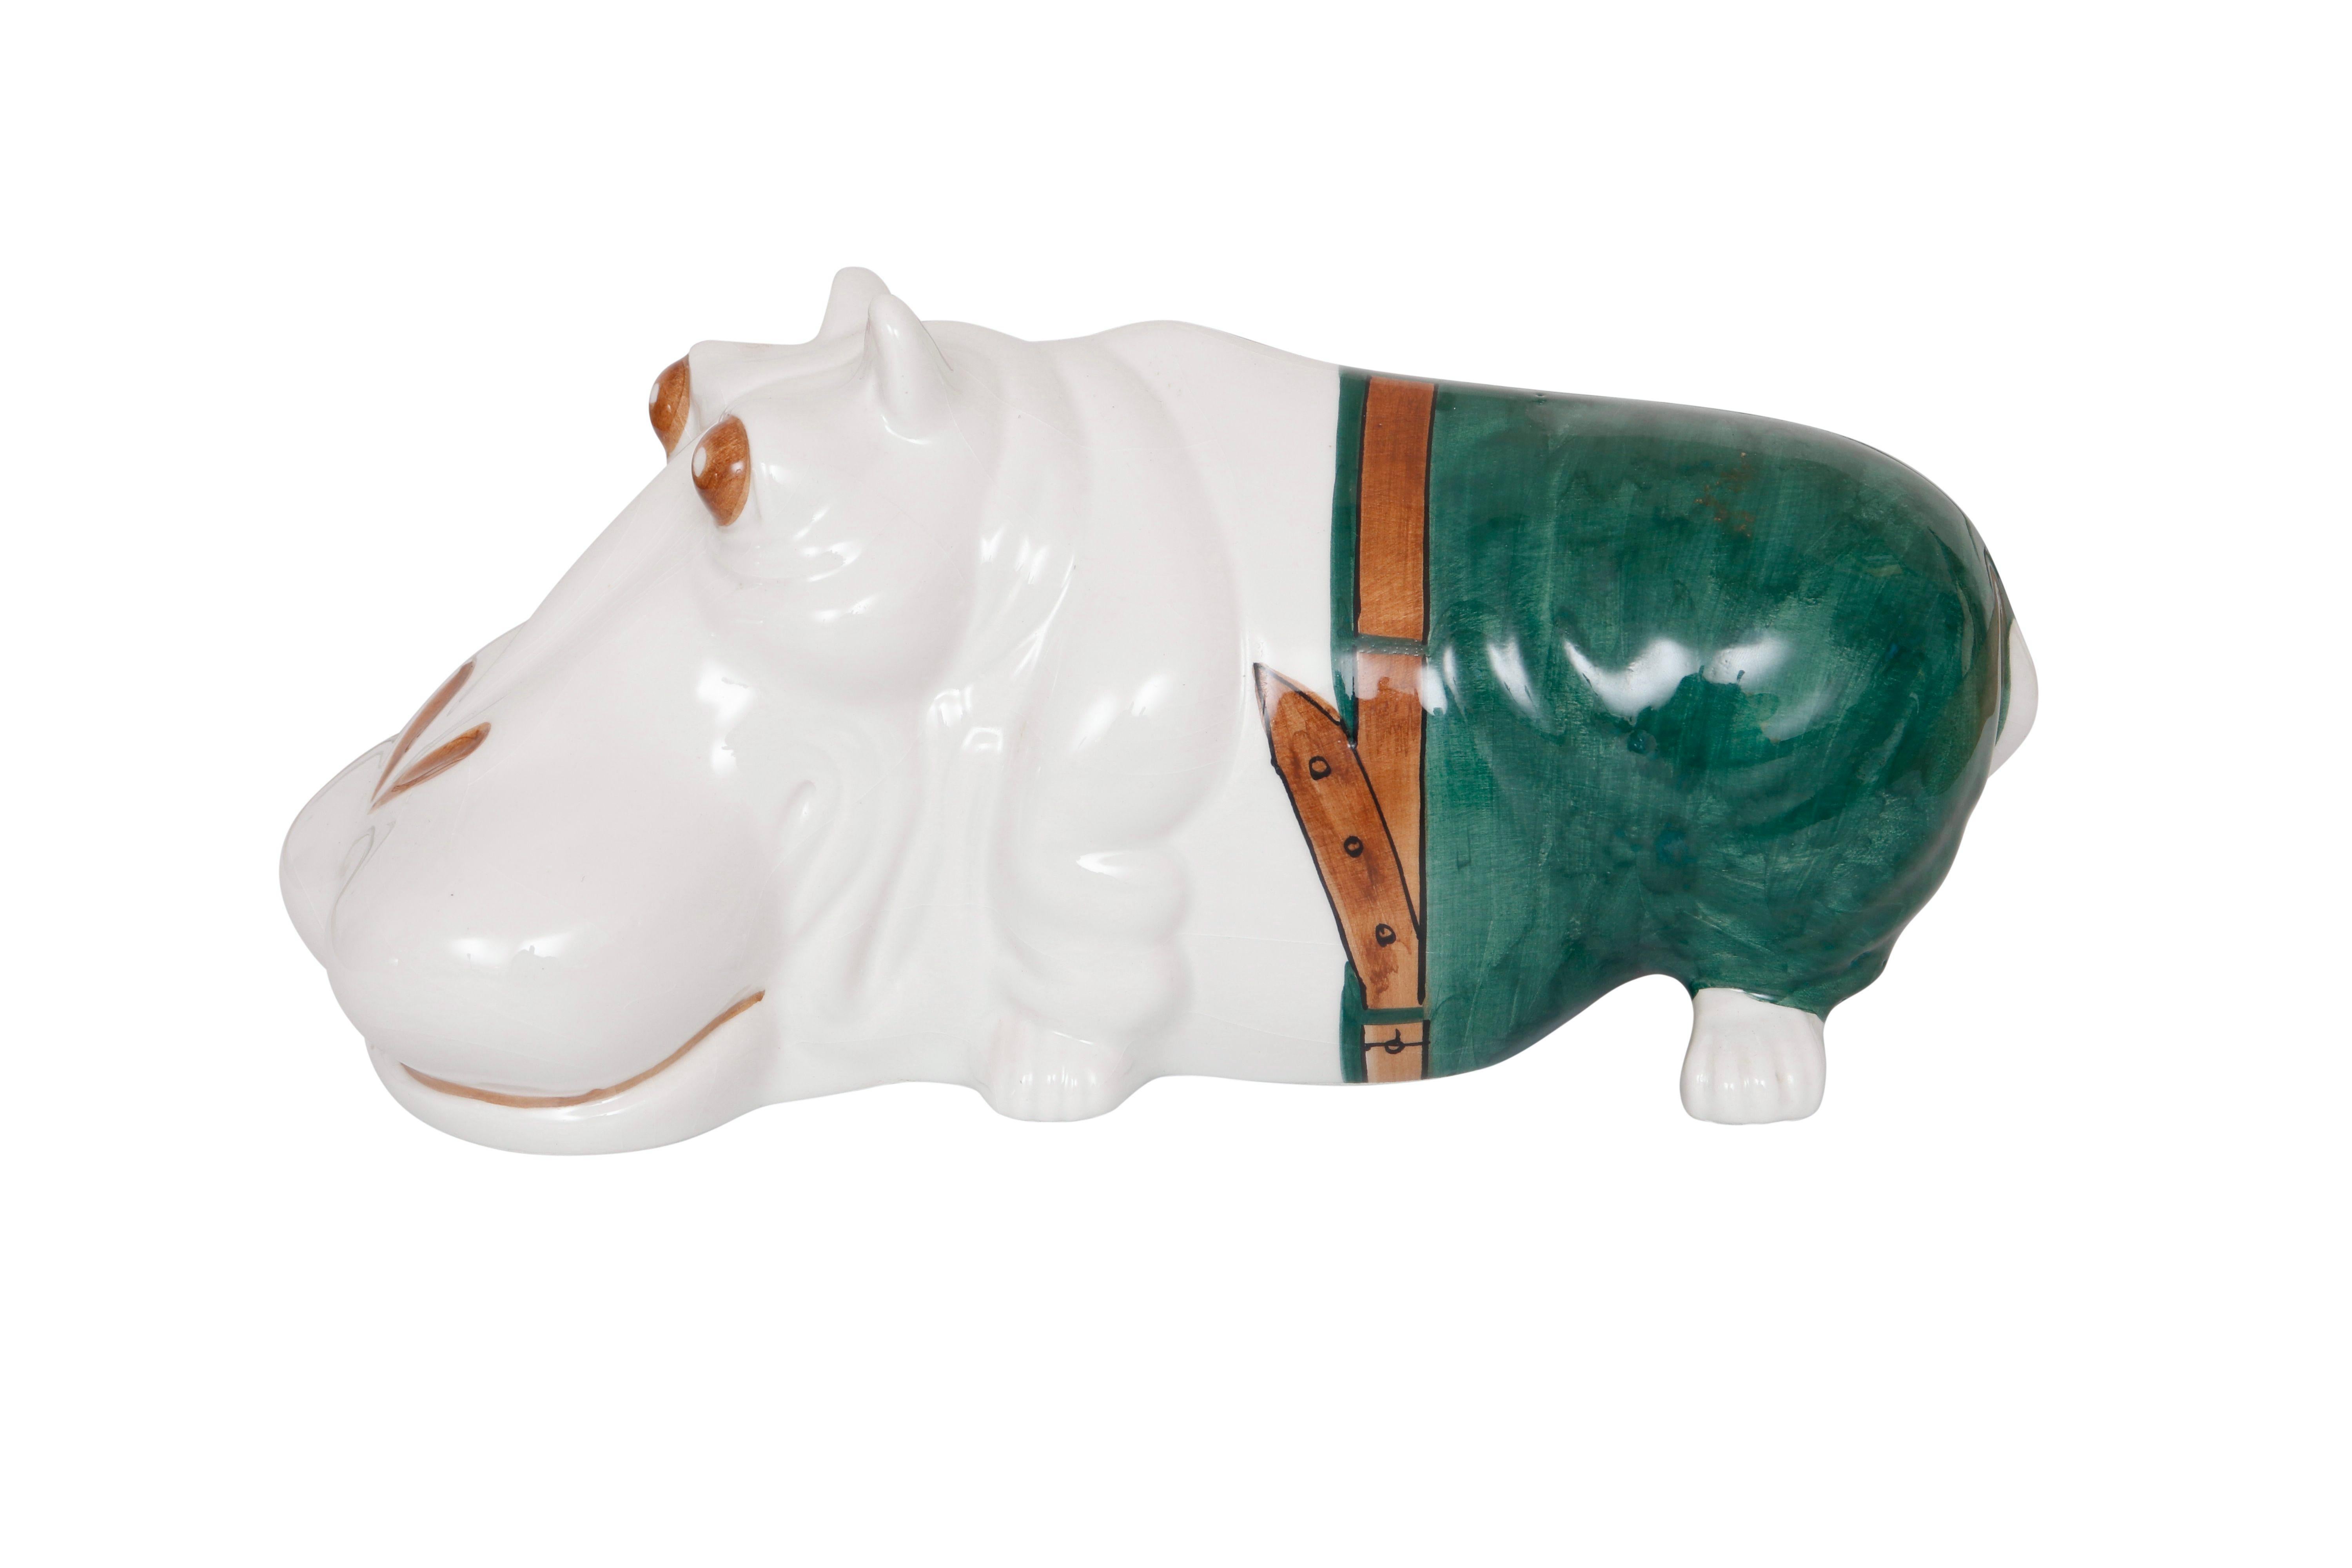 Un hippopotame italien en majolique blanche décoré d'un pantalon vert, d'une ceinture brune et de détails bruns sur le visage. Marqué en dessous de 